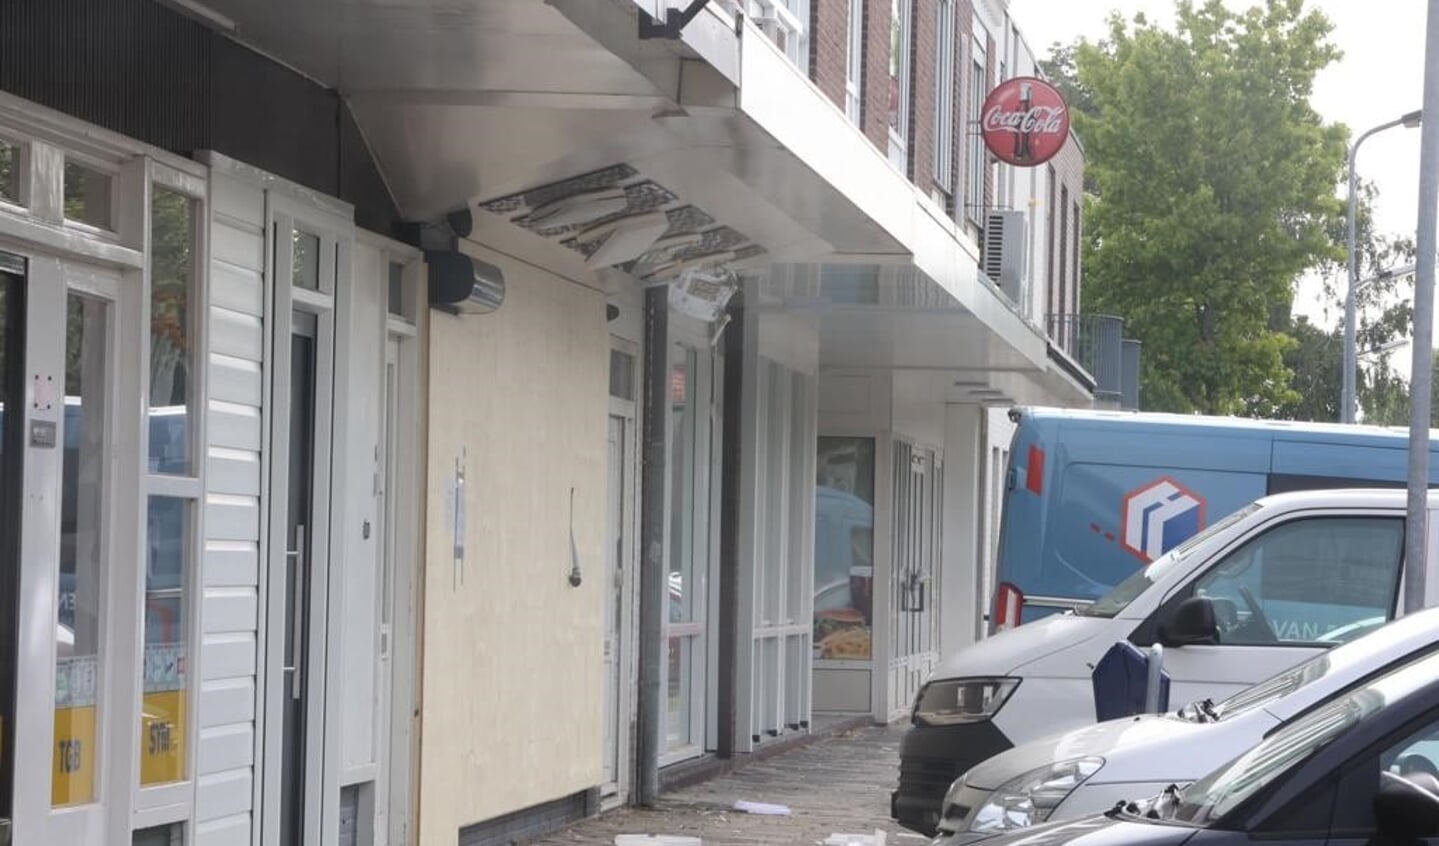 Acht panden in de Hildebrandstraat in Den Bosch zijn vanochtend ontruimd nadat er een handgranaat was aangetroffen op de gevel van een zonnestudio.